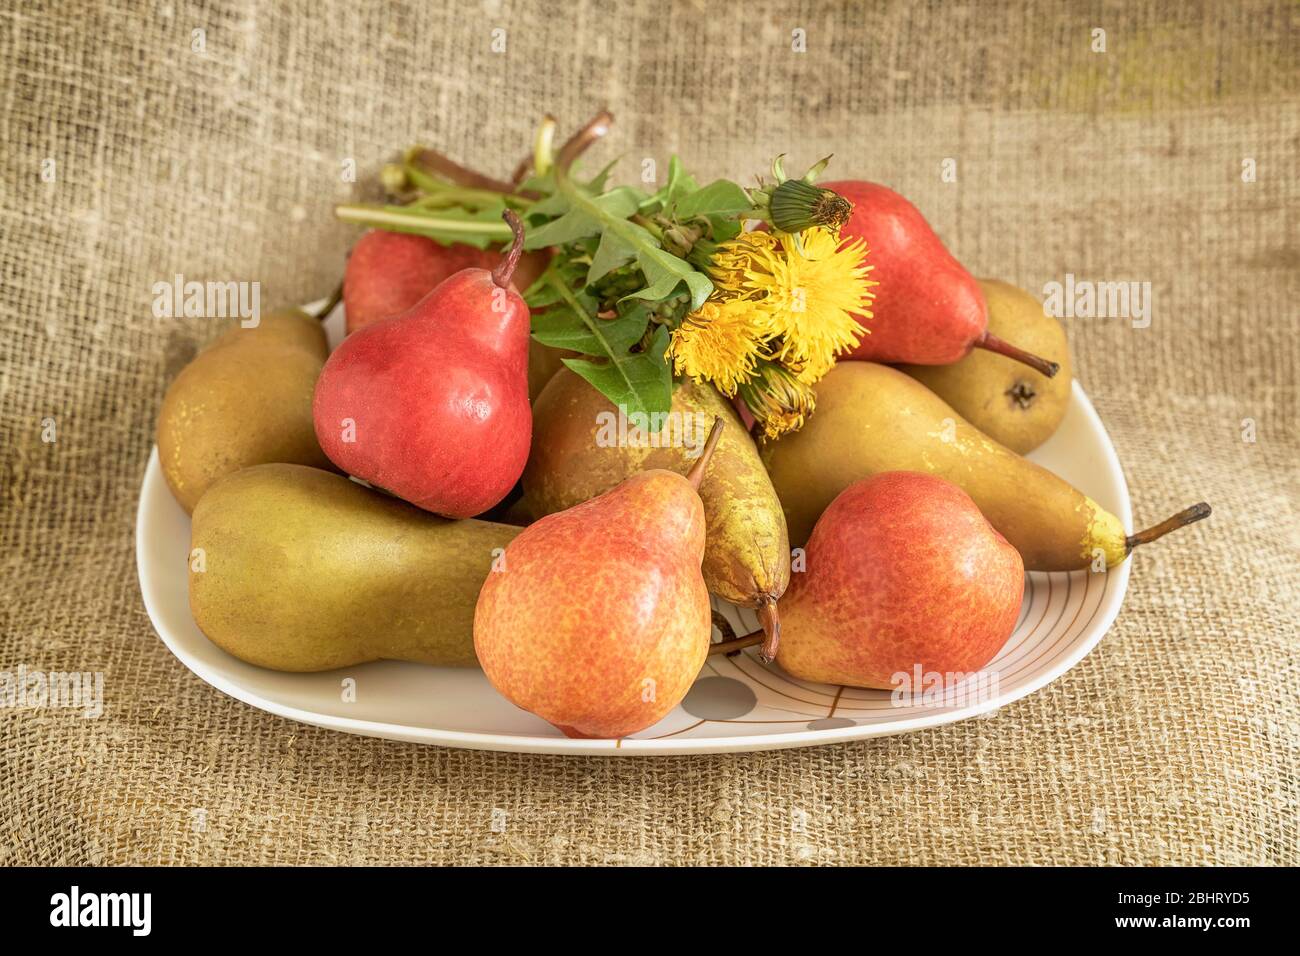 Helle Bio-rote und grüne Birnen in einem Teller auf Burlap, Löwenzahn auf der Oberseite, natürliche Frucht Hintergrund, Konzept der gesunden Ernährung Stockfoto